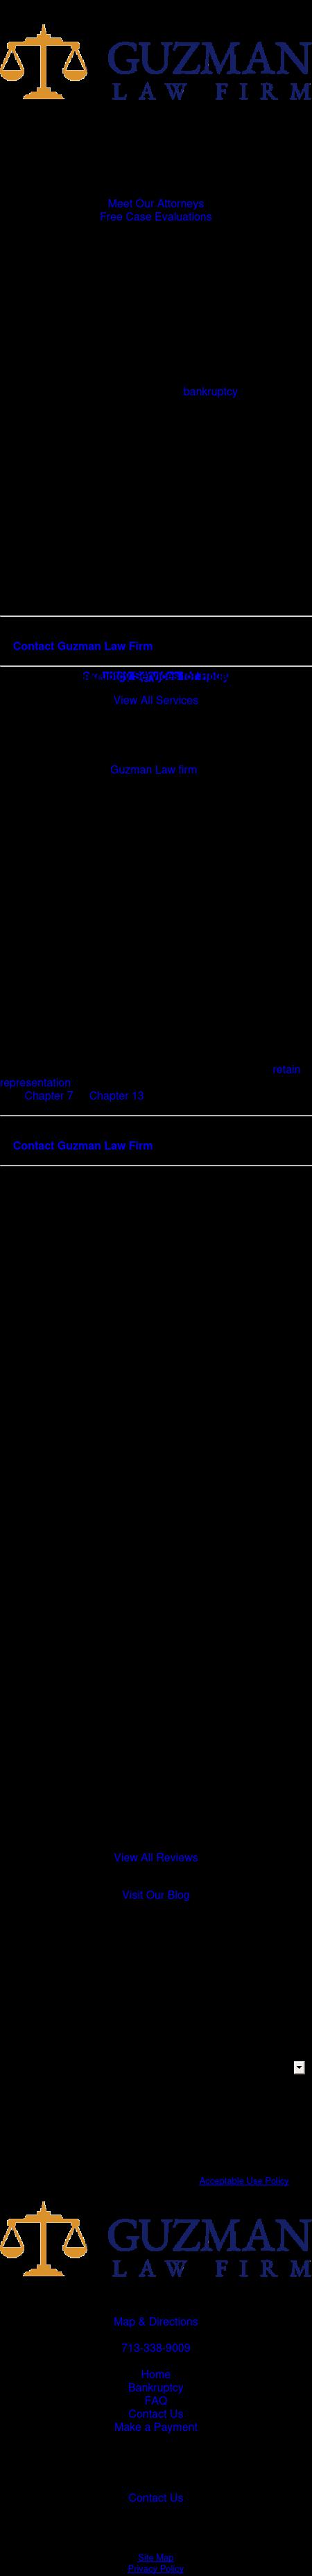 Guzman Law Firm - Houston TX Lawyers